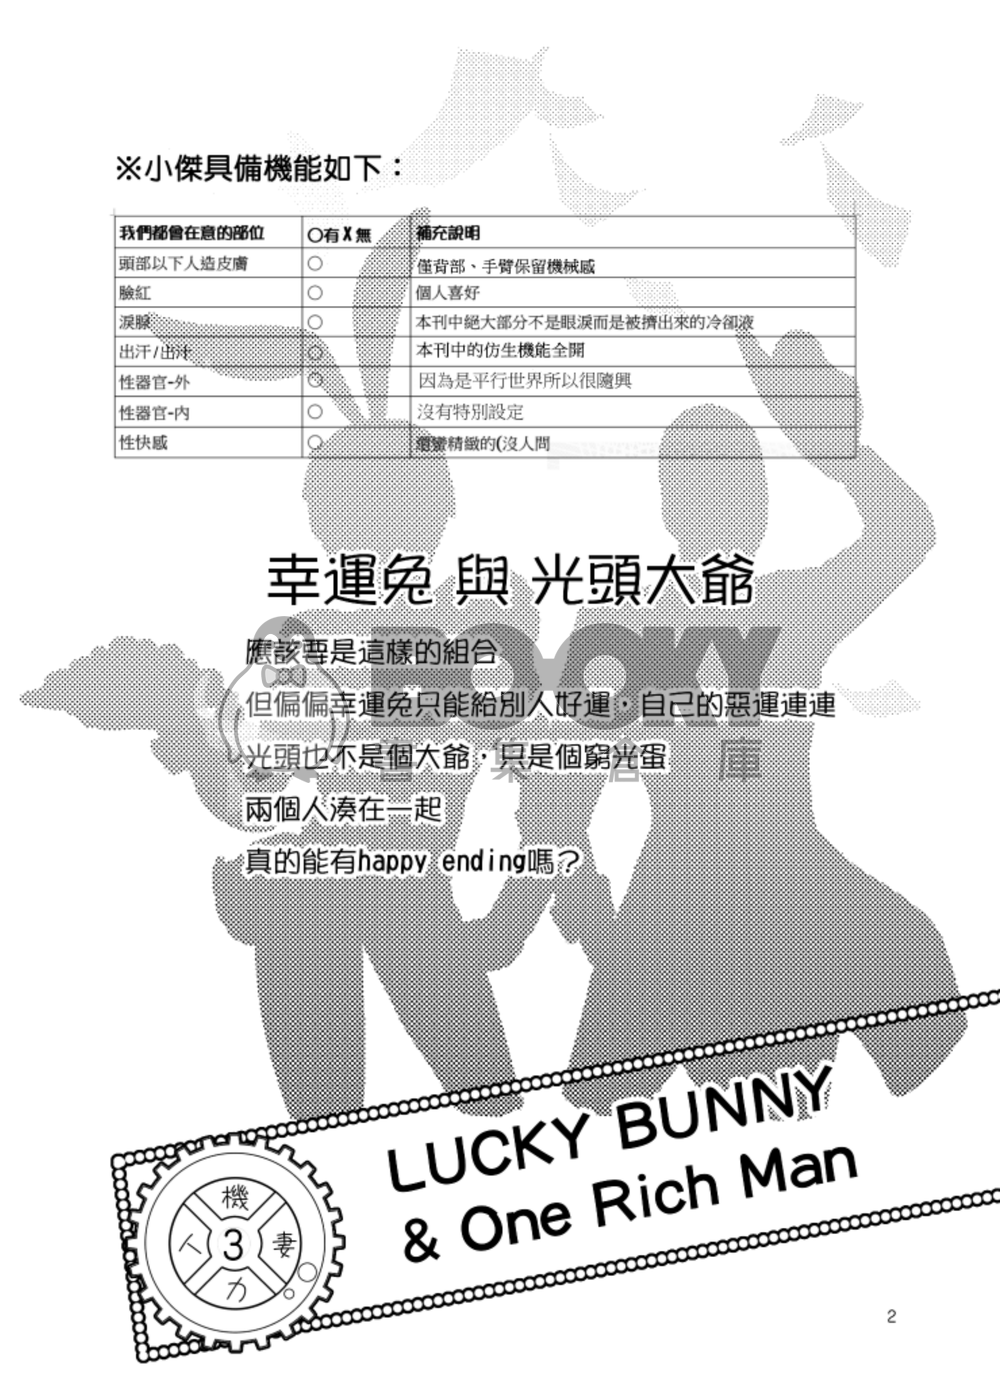 Lucky Bunny &One Rich Man 試閱圖片